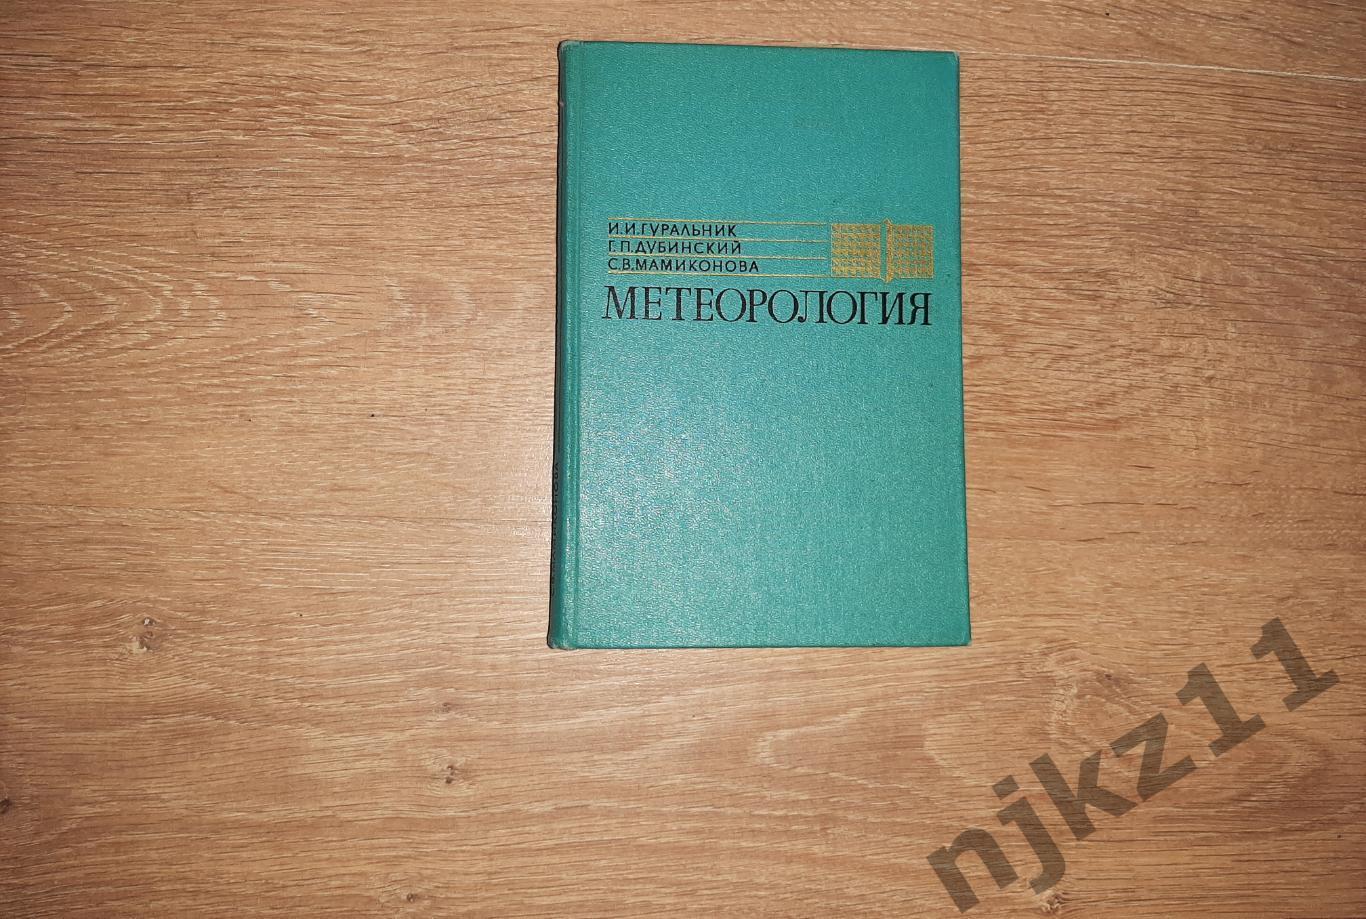 Гуральник МЕТЕОРОЛОГИЯ 1972г редкий учебник СССР